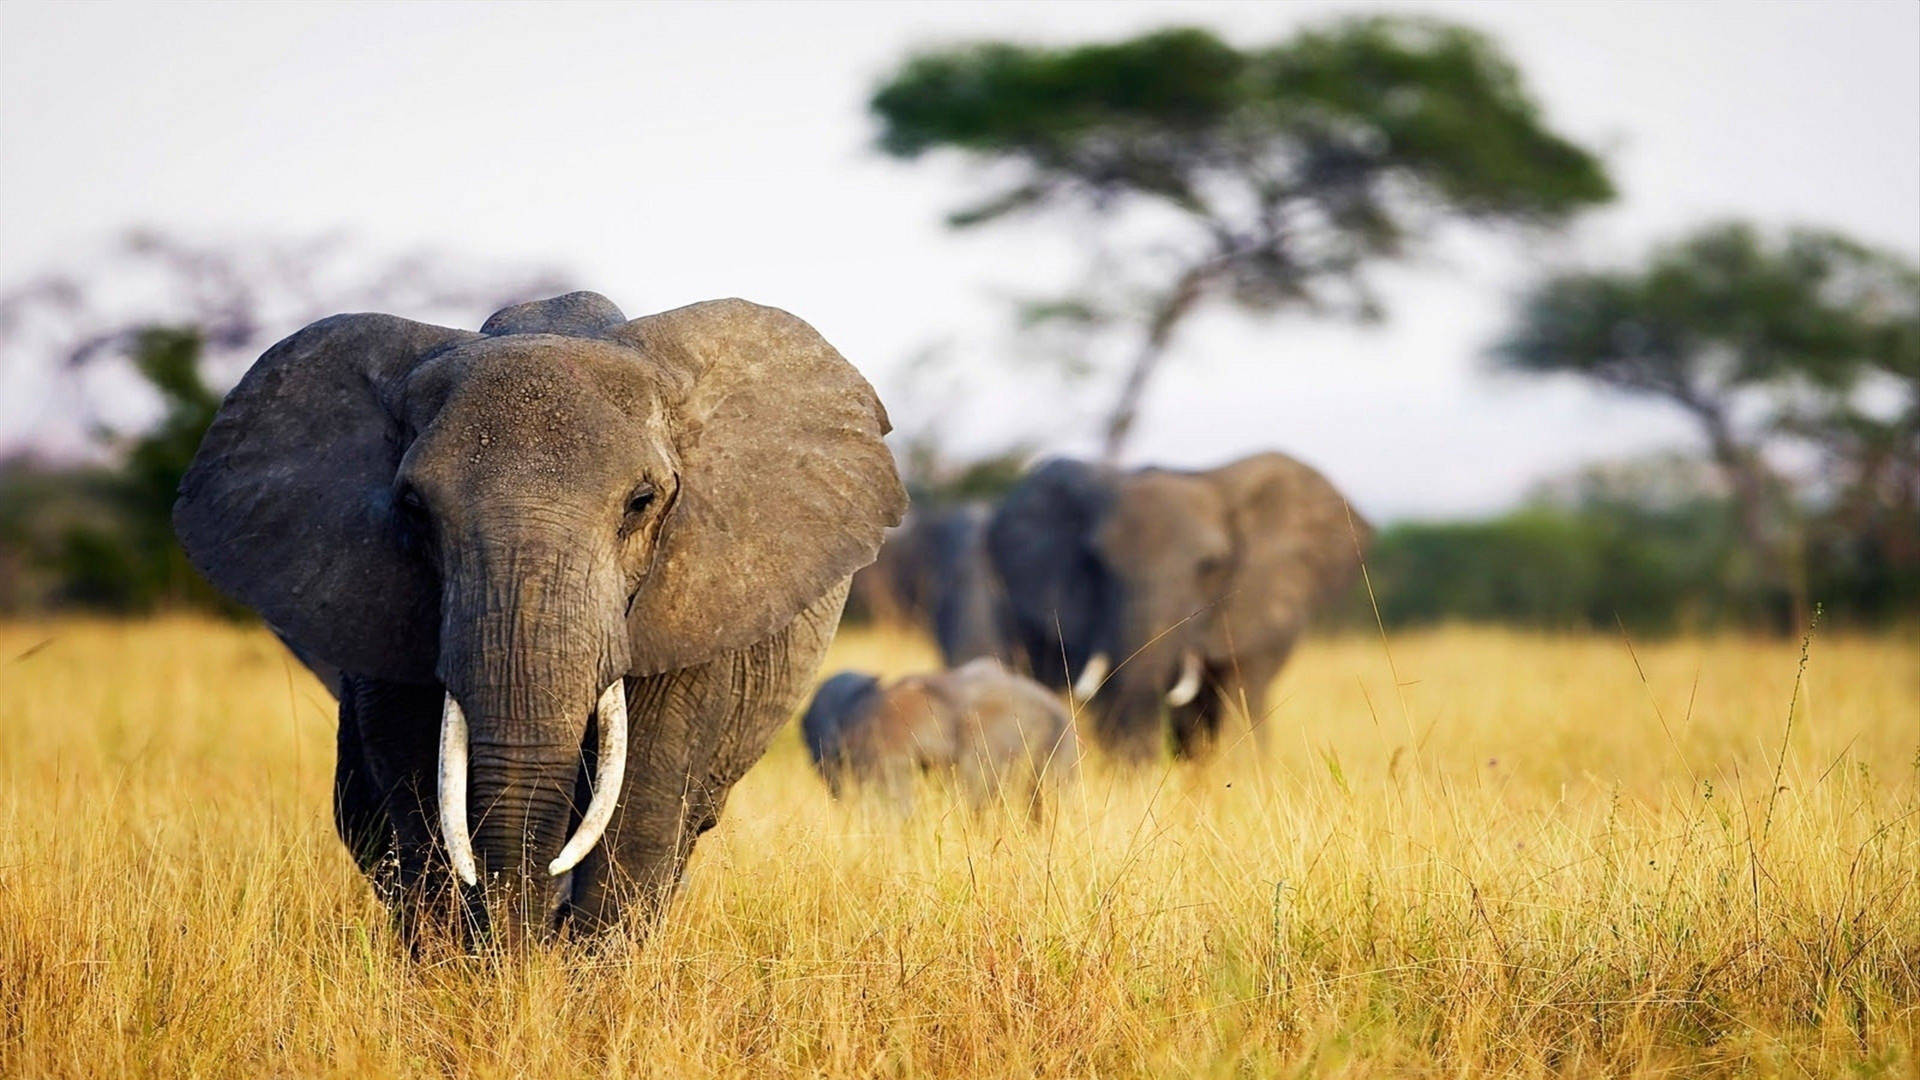 Nyd udsigten af et elefant der går i græslandet. Wallpaper